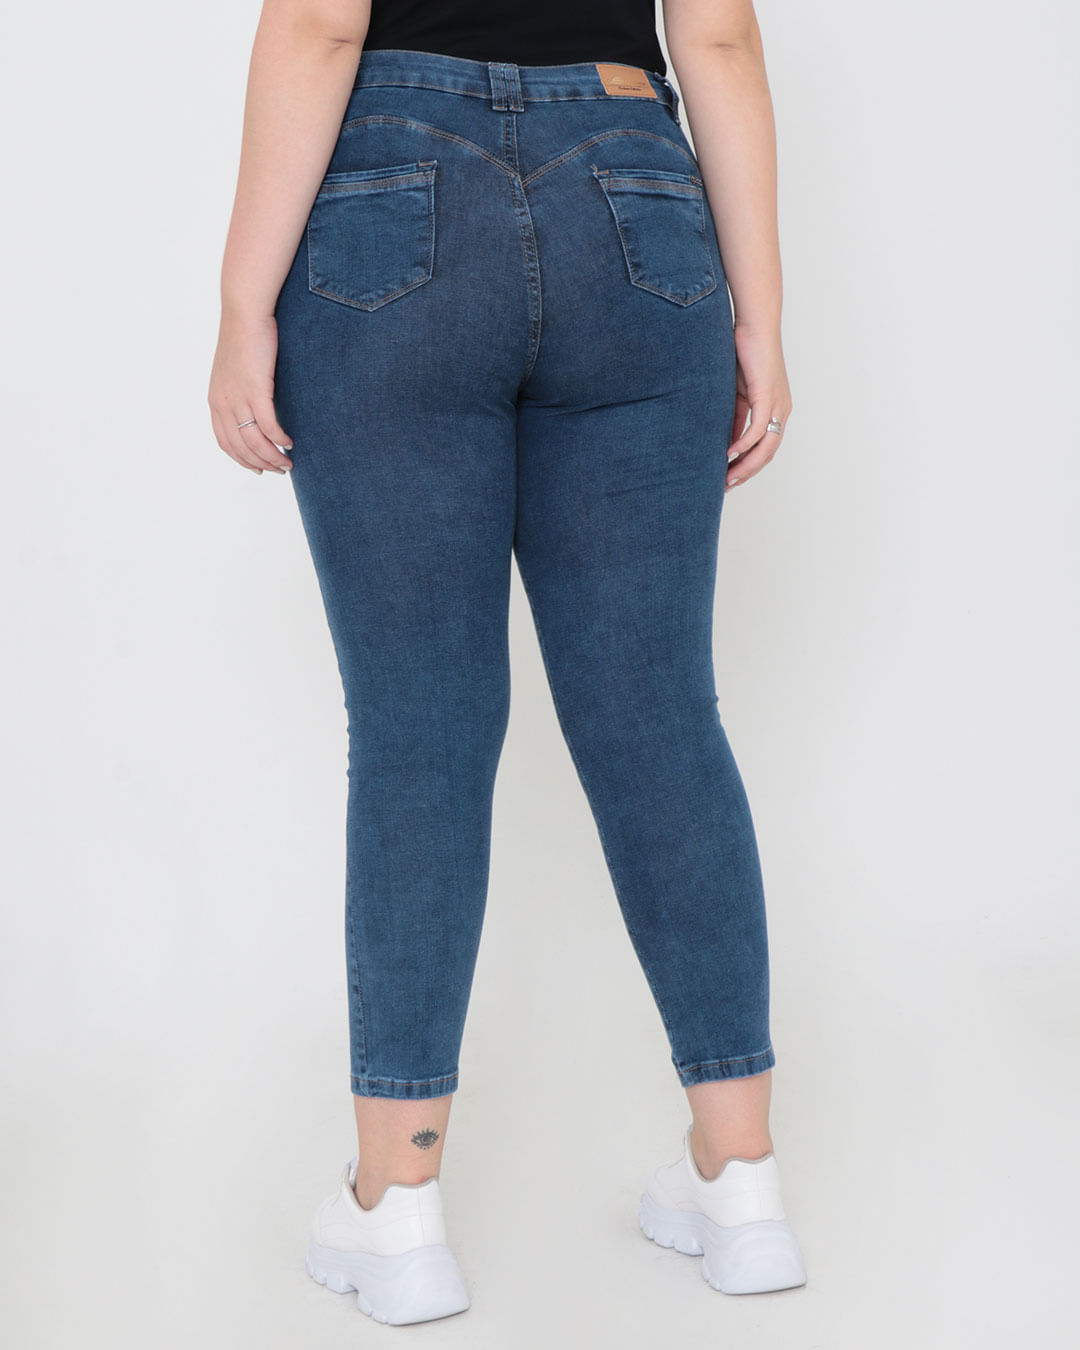 Calca-Sawary-Jeans-Feminina-Plus-Size-Skinny-Desfiados-Azul